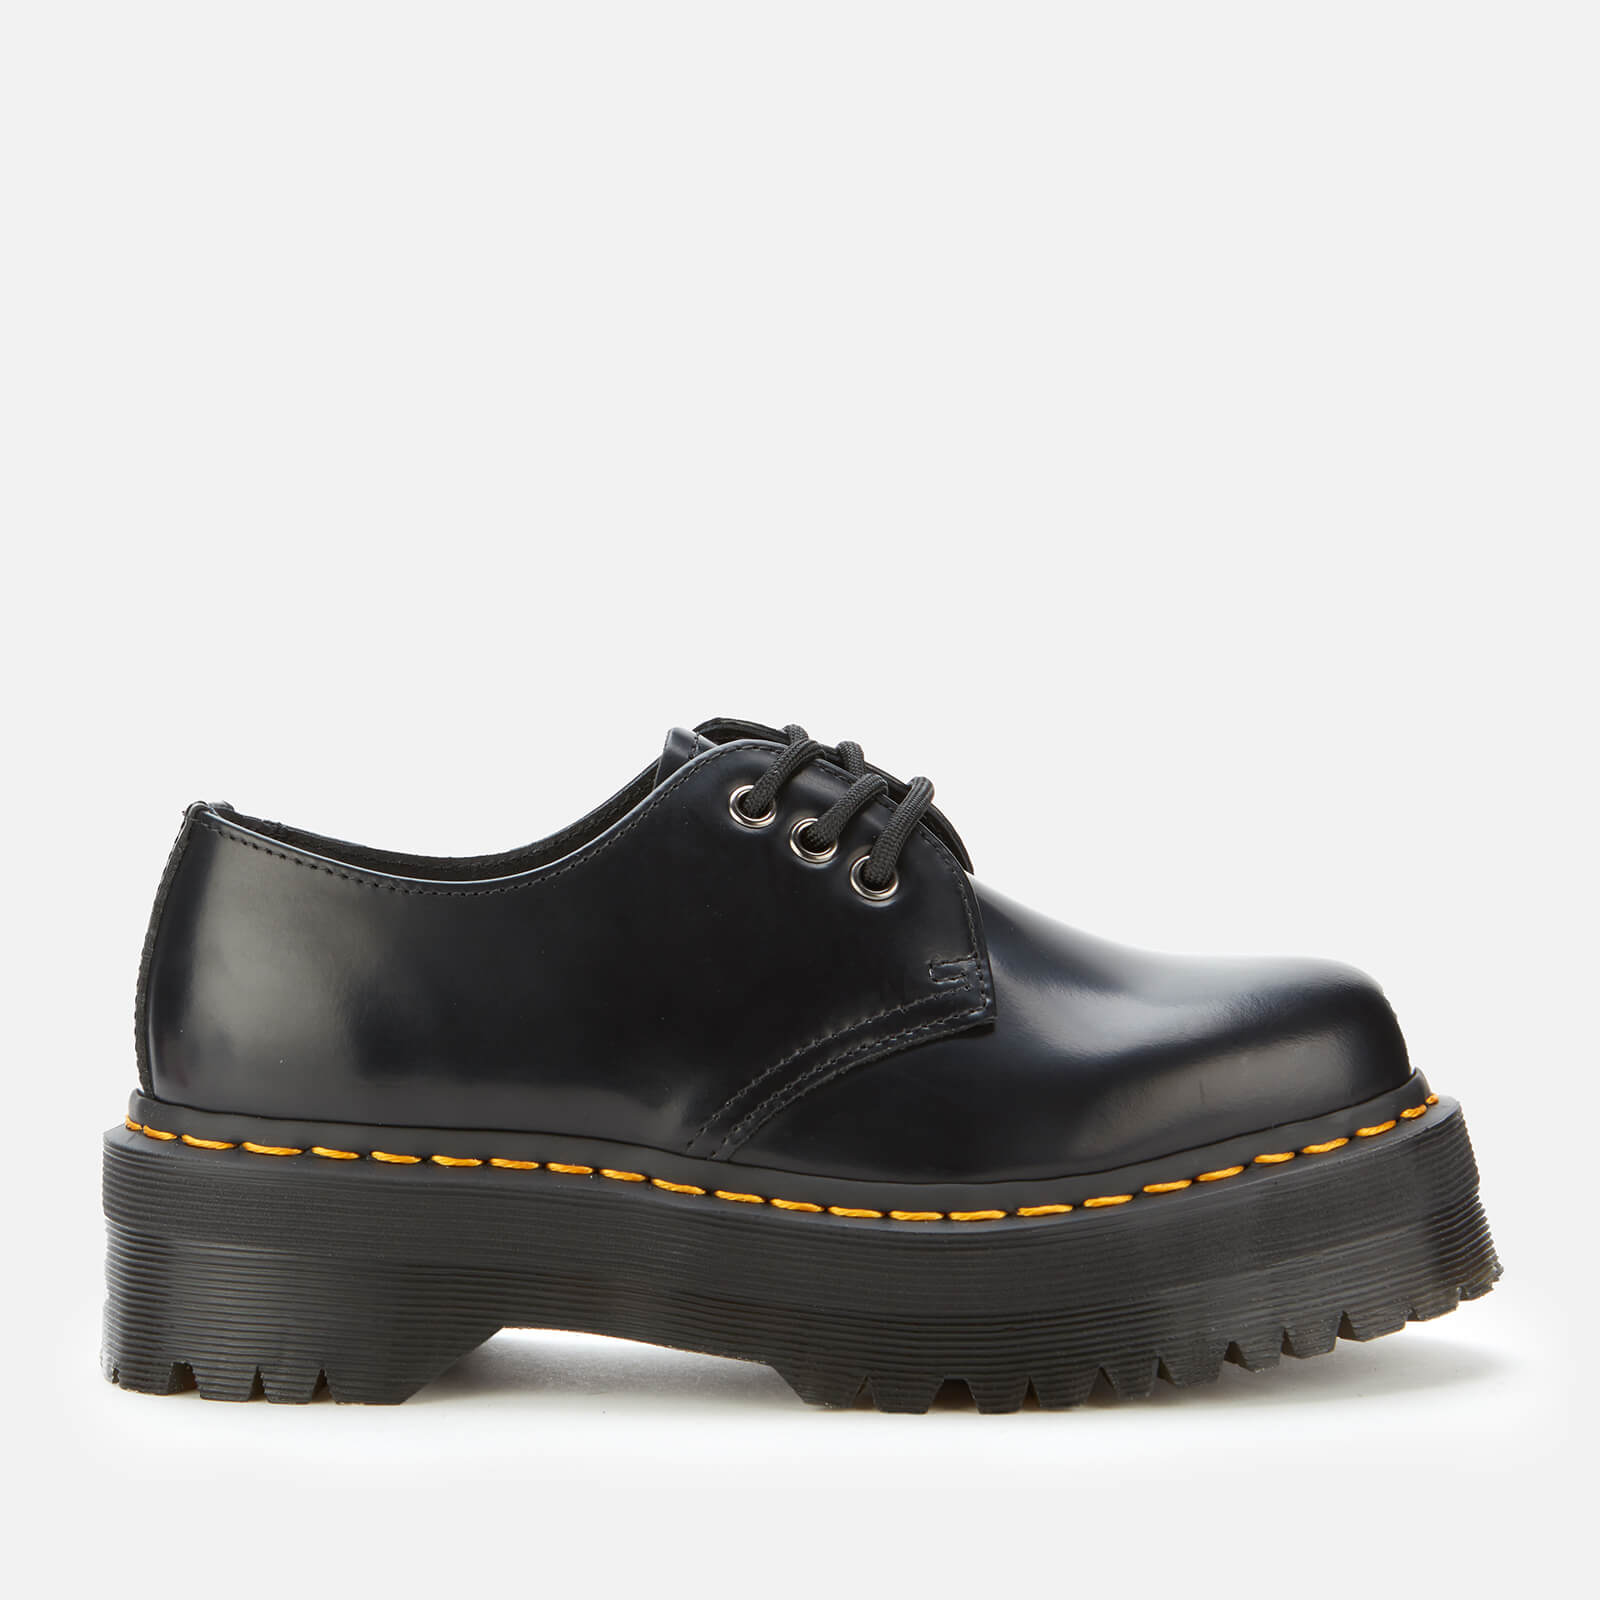 Dr. Martens 1461 Quad Leather 3-Eye Shoes - Black - Uk 8